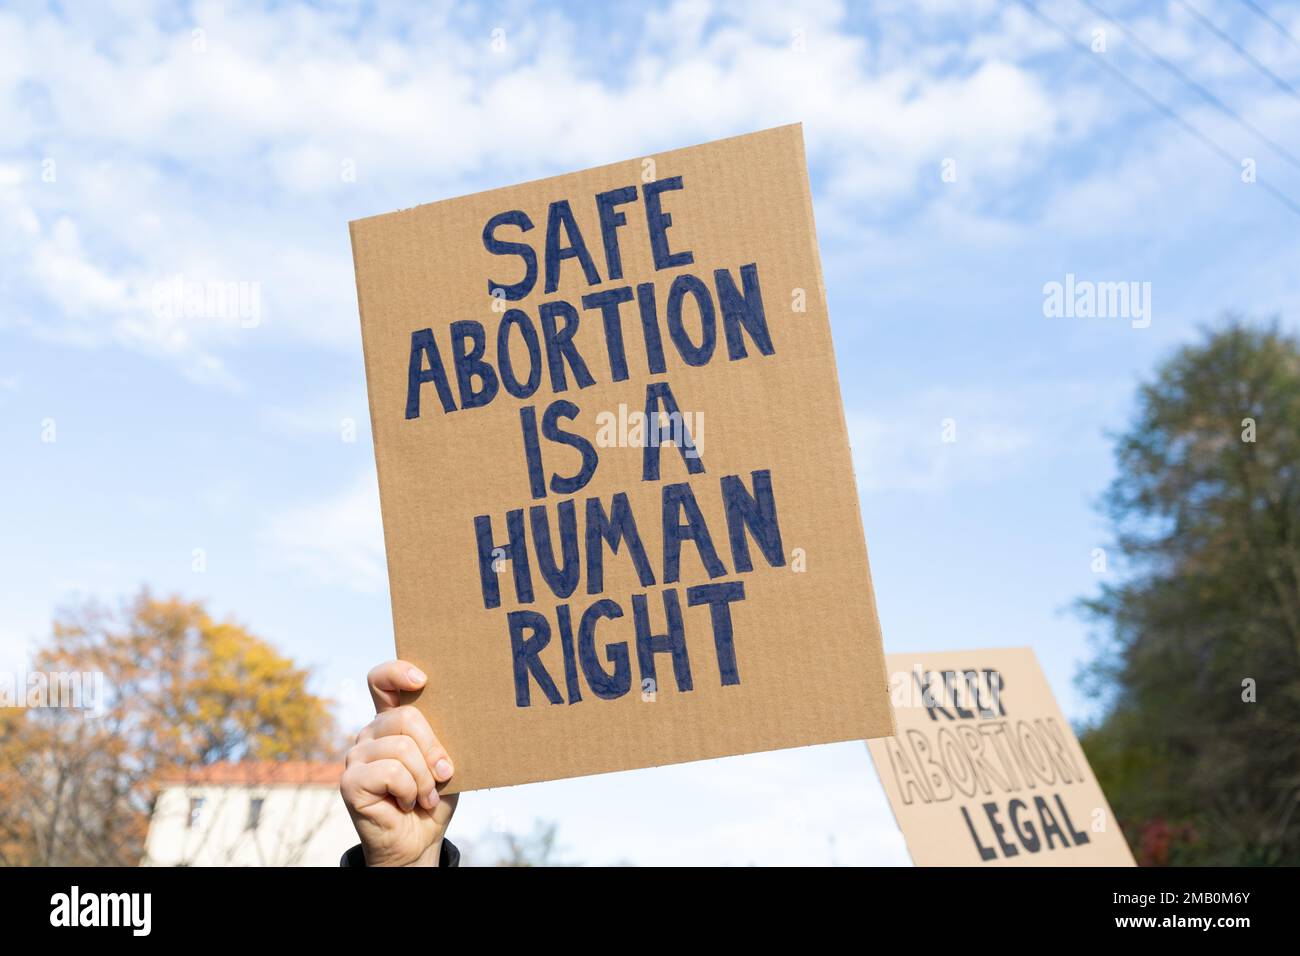 Les manifestants brandir des signes avec des slogans l'avortement sans risque est un droit de l'homme, garder l'avortement légal. Personnes avec des pancartes lors d'une manifestation de rassemblement de protestation. Banque D'Images